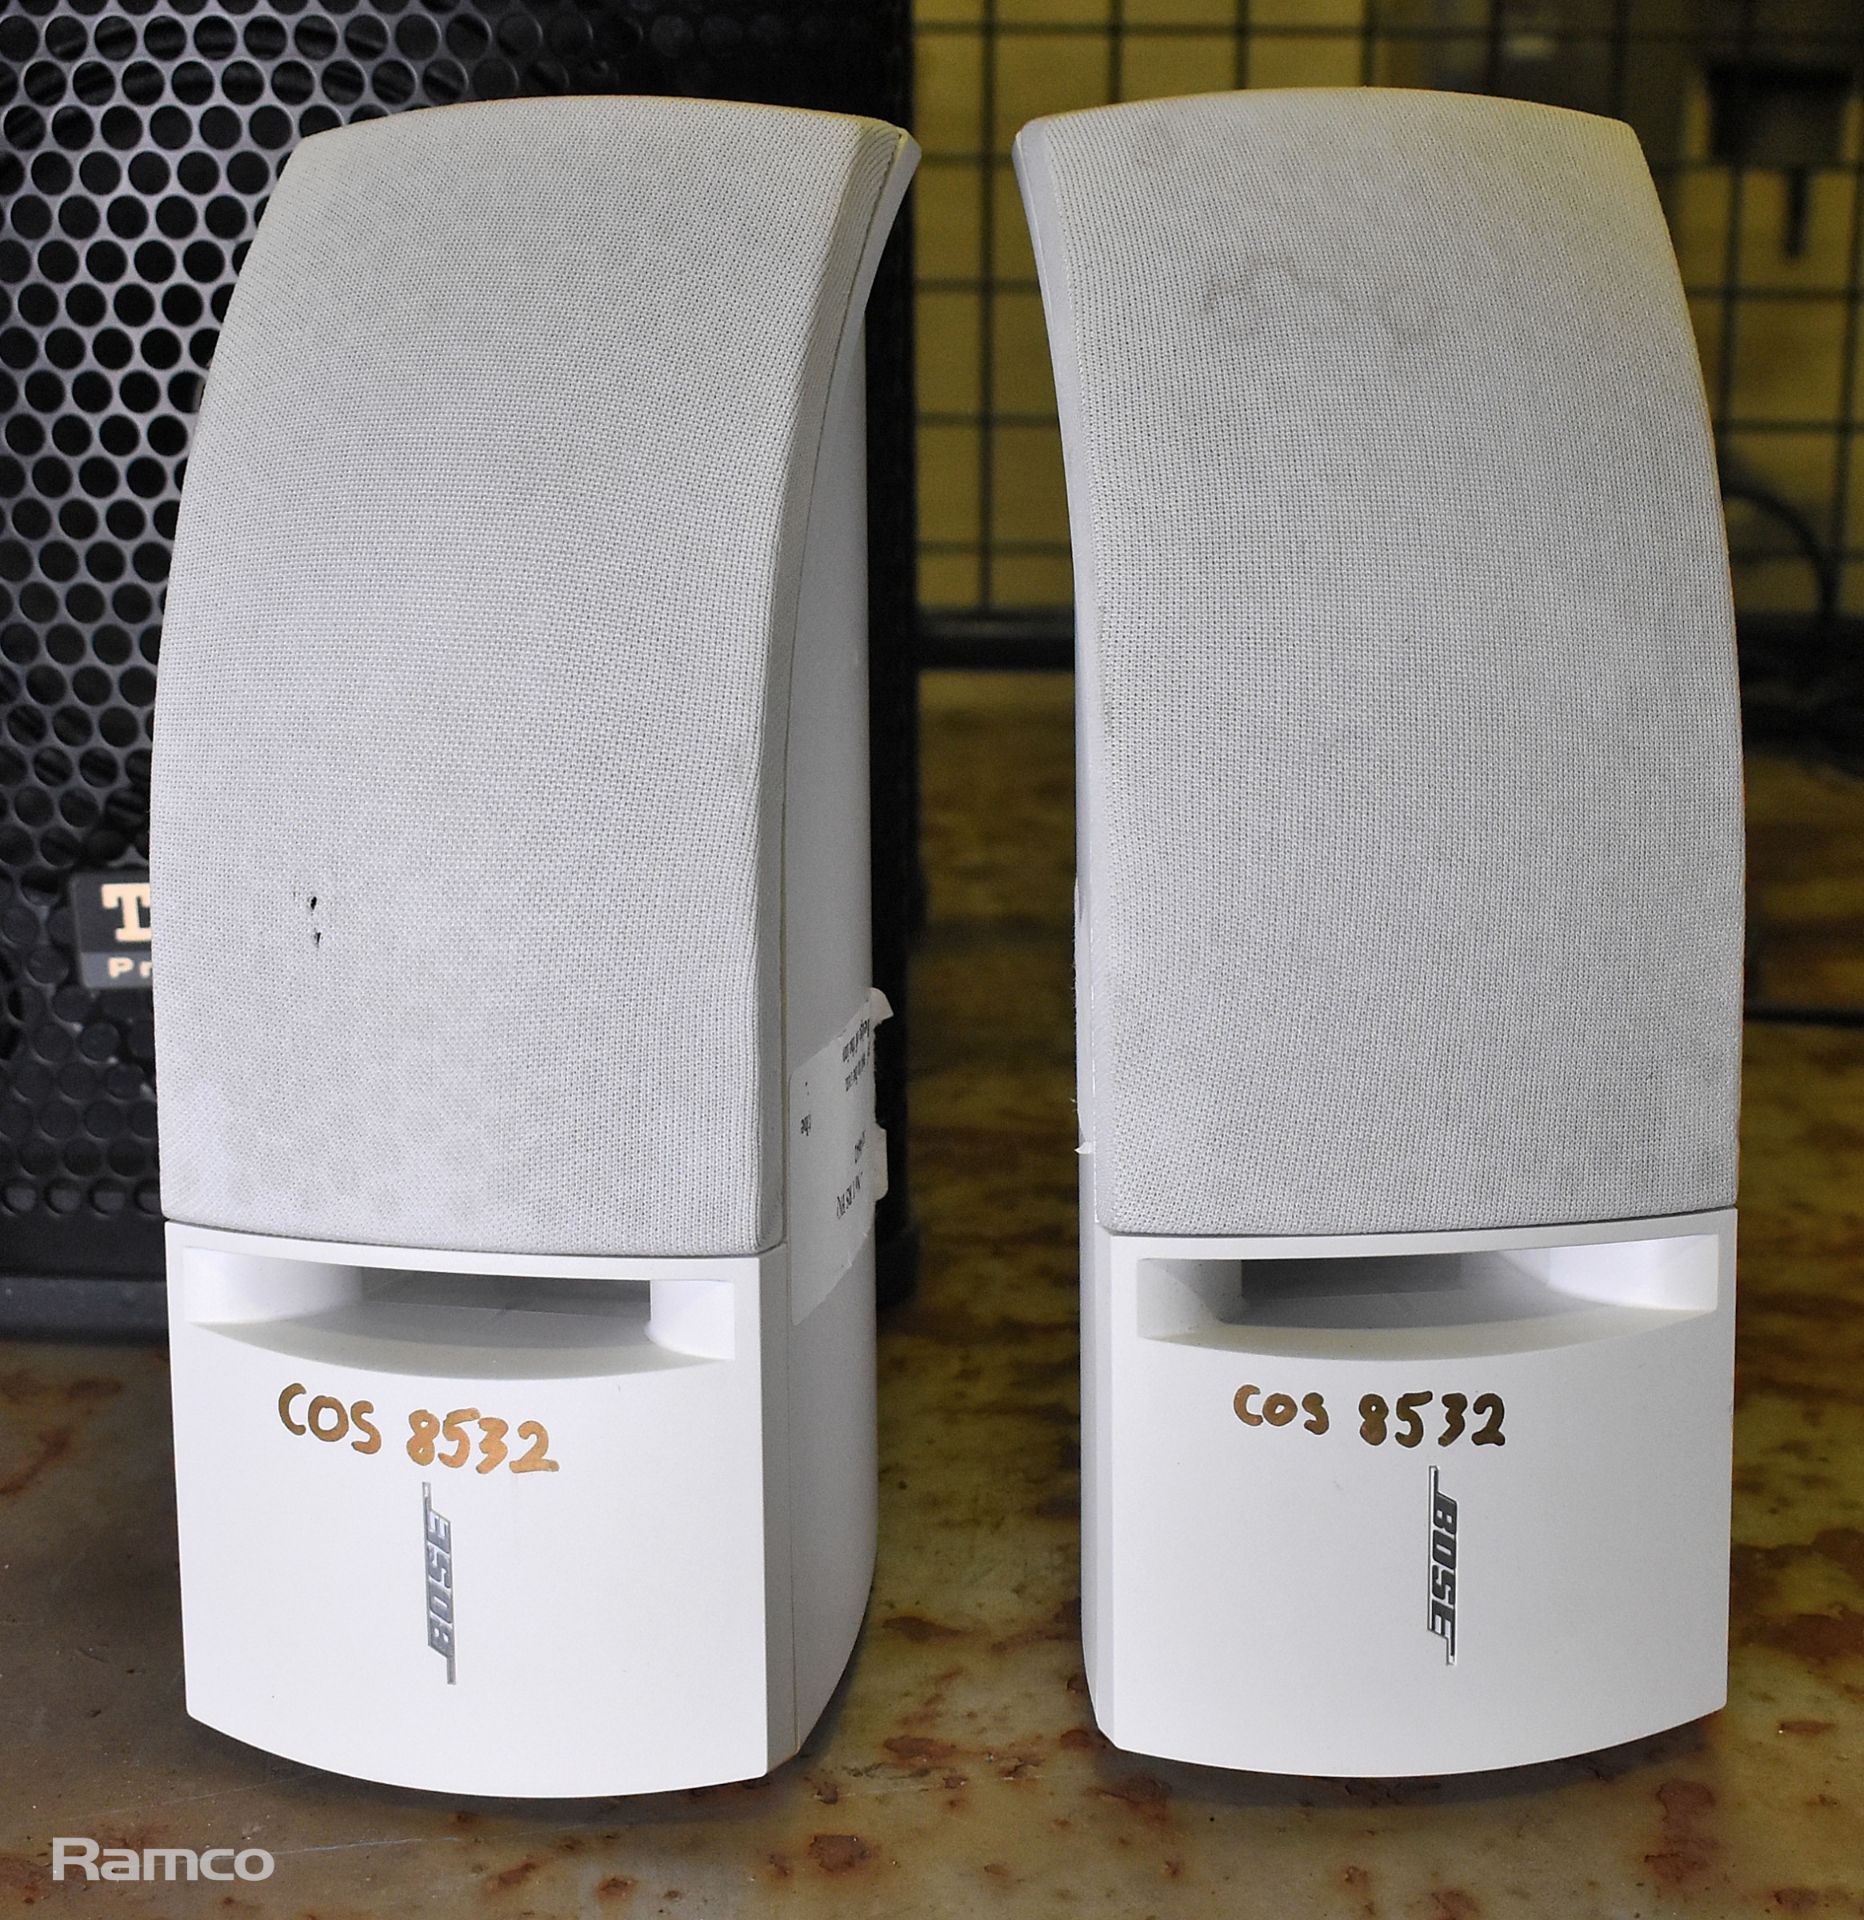 Audio equipment - speakers, microphones - brands: Bose, Adastra, Tannoy Professional - Image 11 of 12